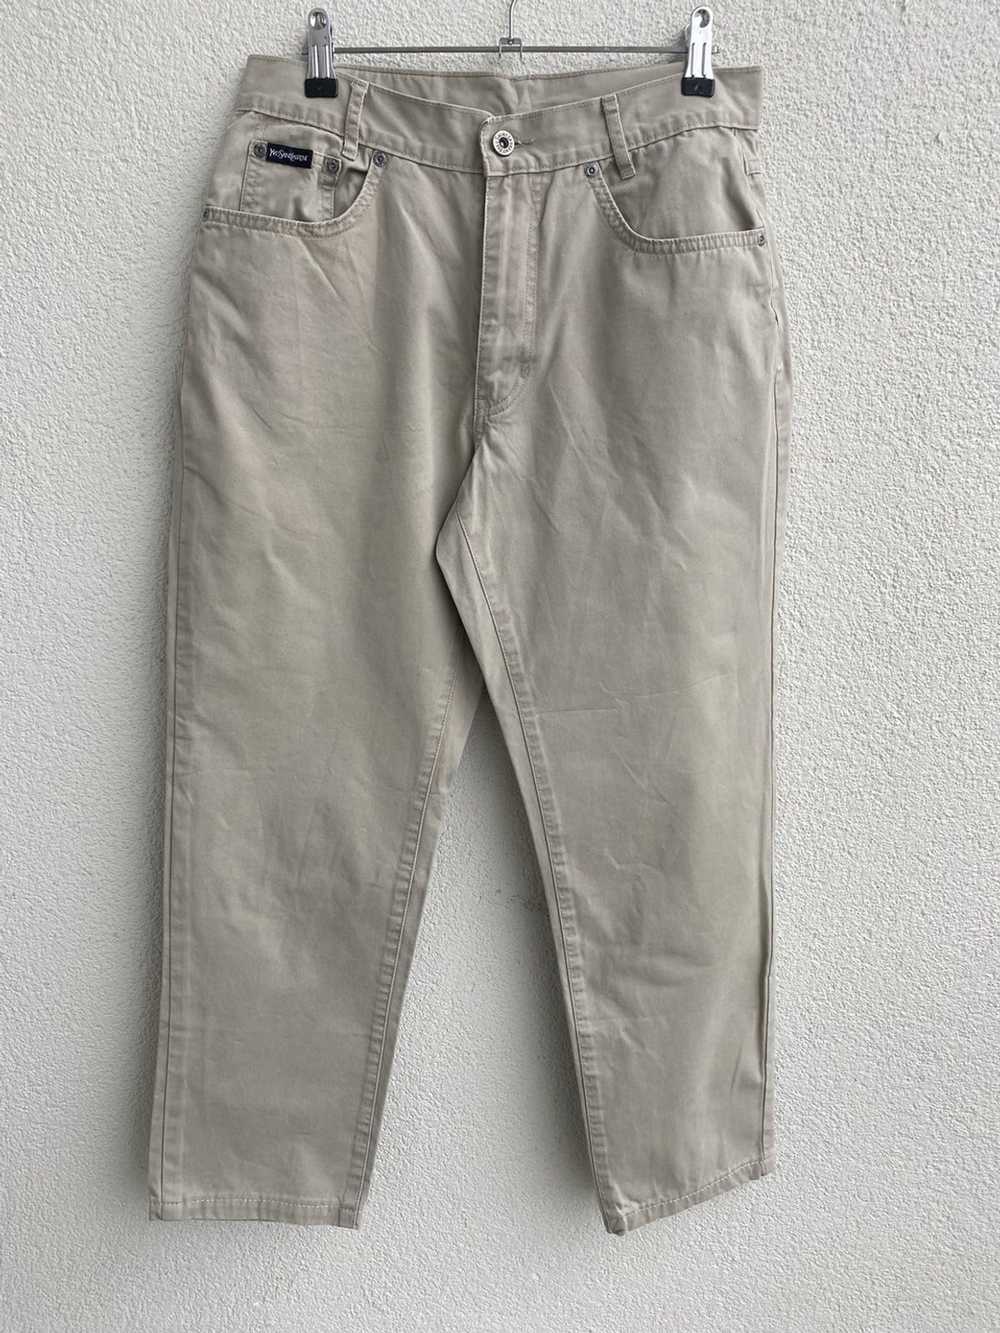 Yves Saint Laurent Beige YSL Cotton Jeans - image 3